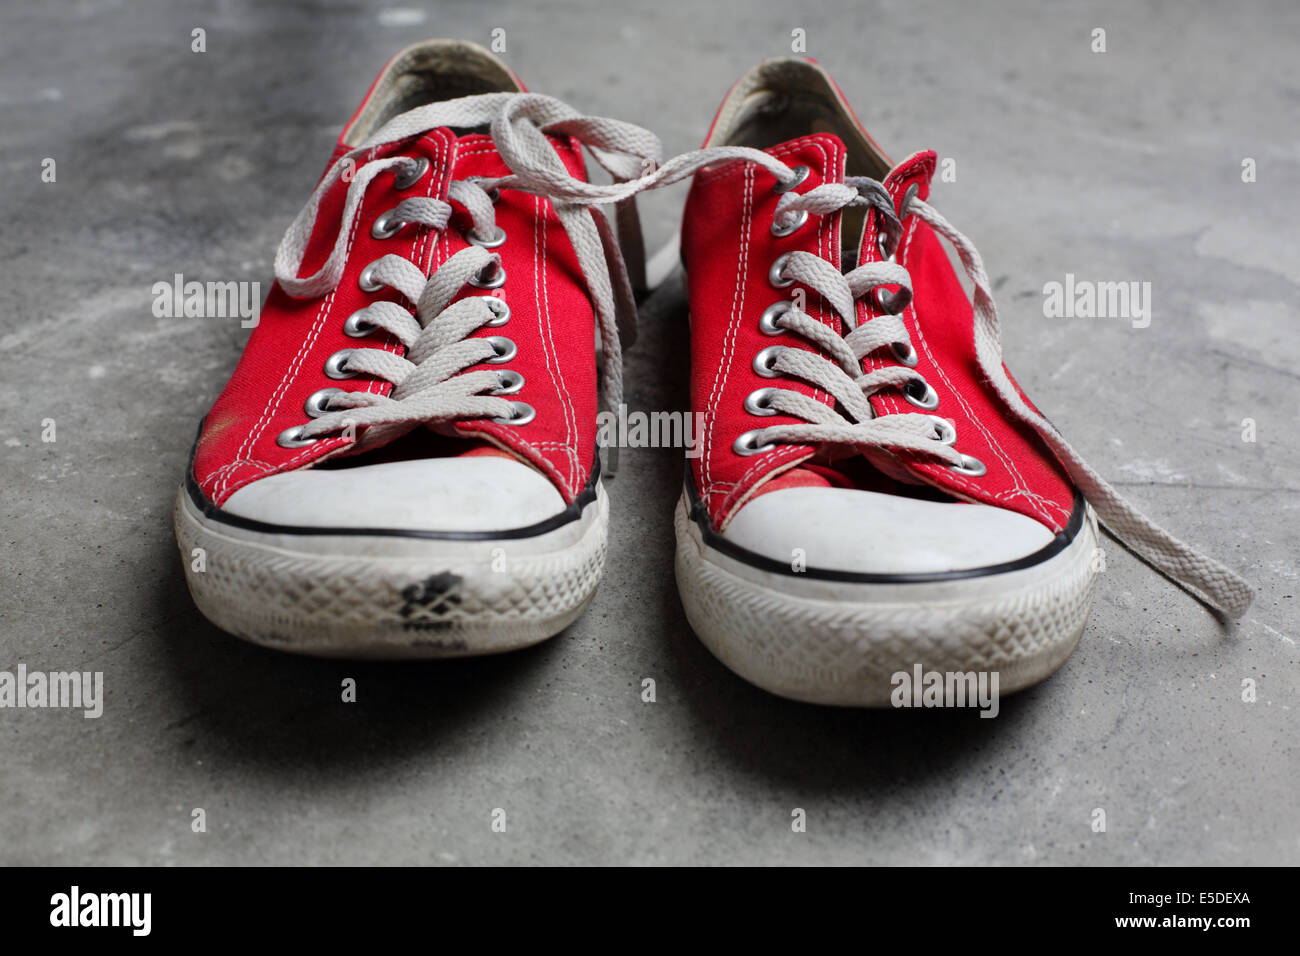 Une seule paire de chaussures Converse rouge tourné contre un arrière-plan en béton Banque D'Images